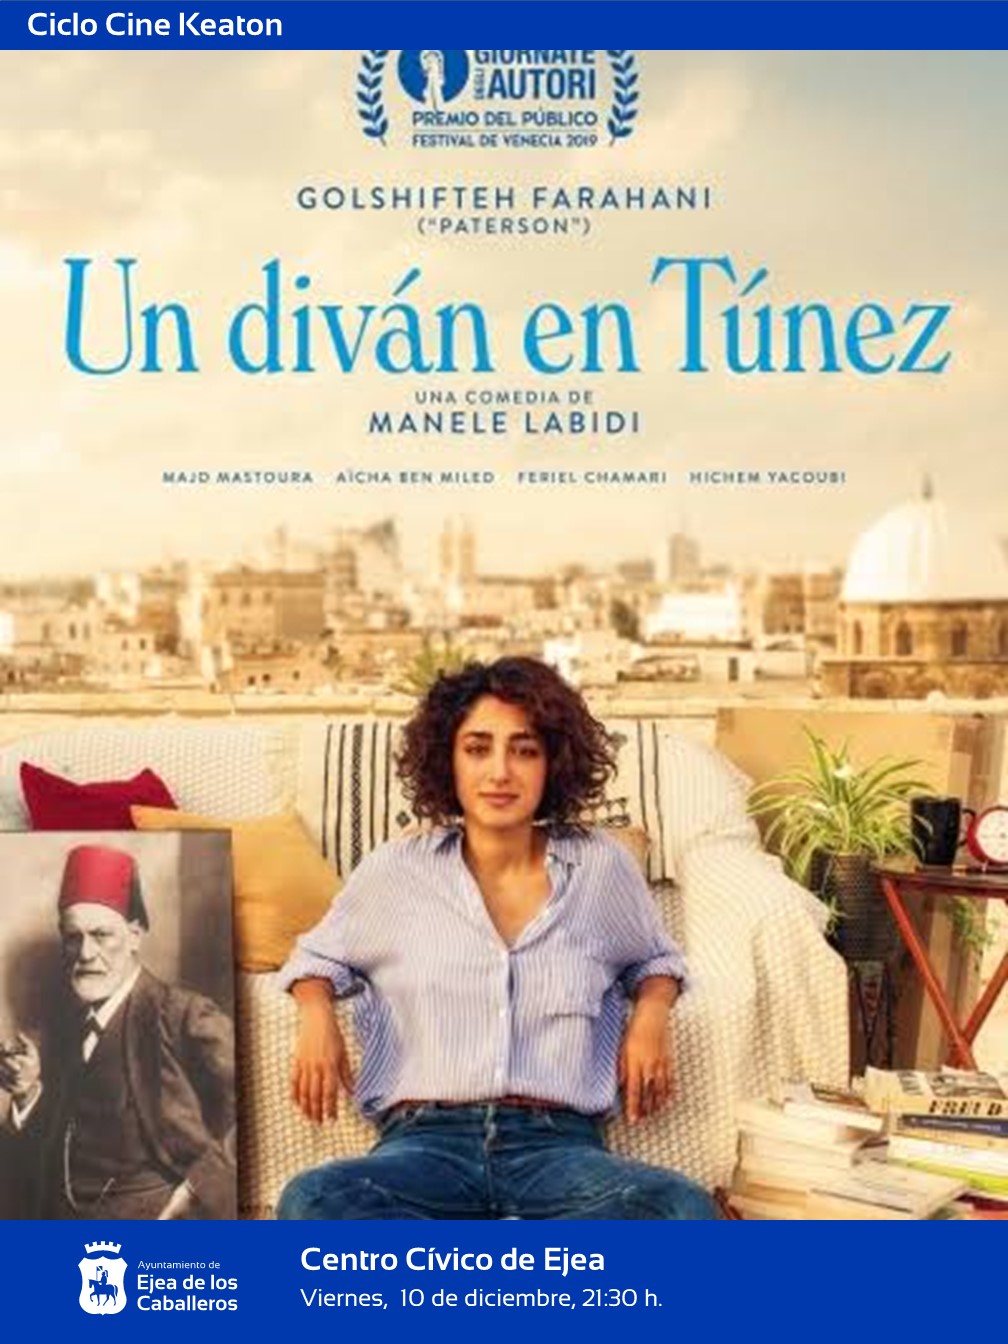 En este momento estás viendo El ciclo Keaton propone “Un diván en Túnez”, una comedia con el trasfondo social del choque cultural de una joven tunecina educada en París